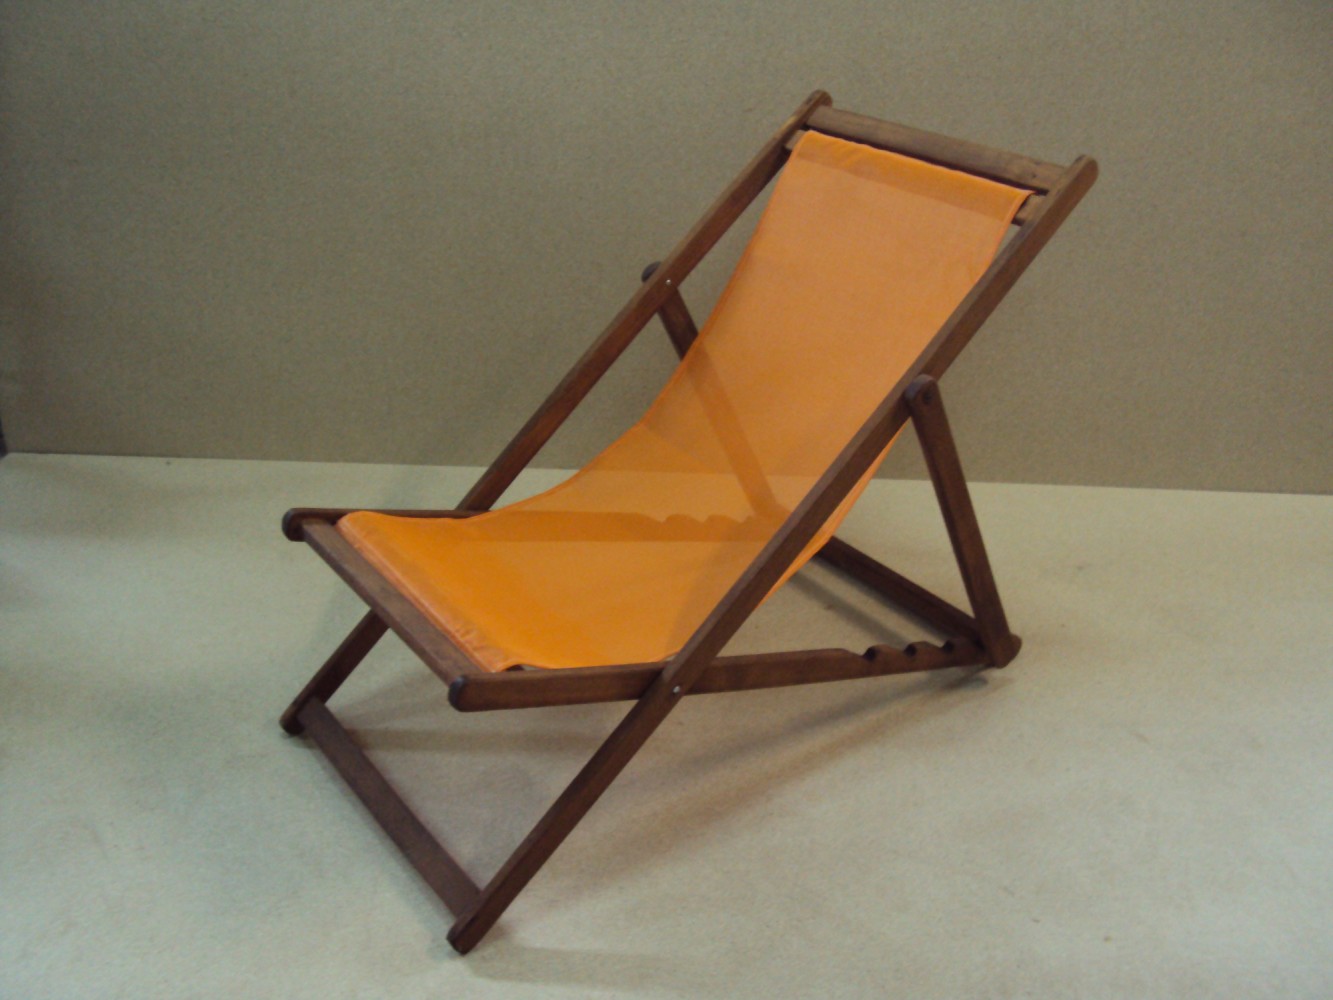 Professional Deck Chair Beach Bar Deck Chairs For Beach Pool